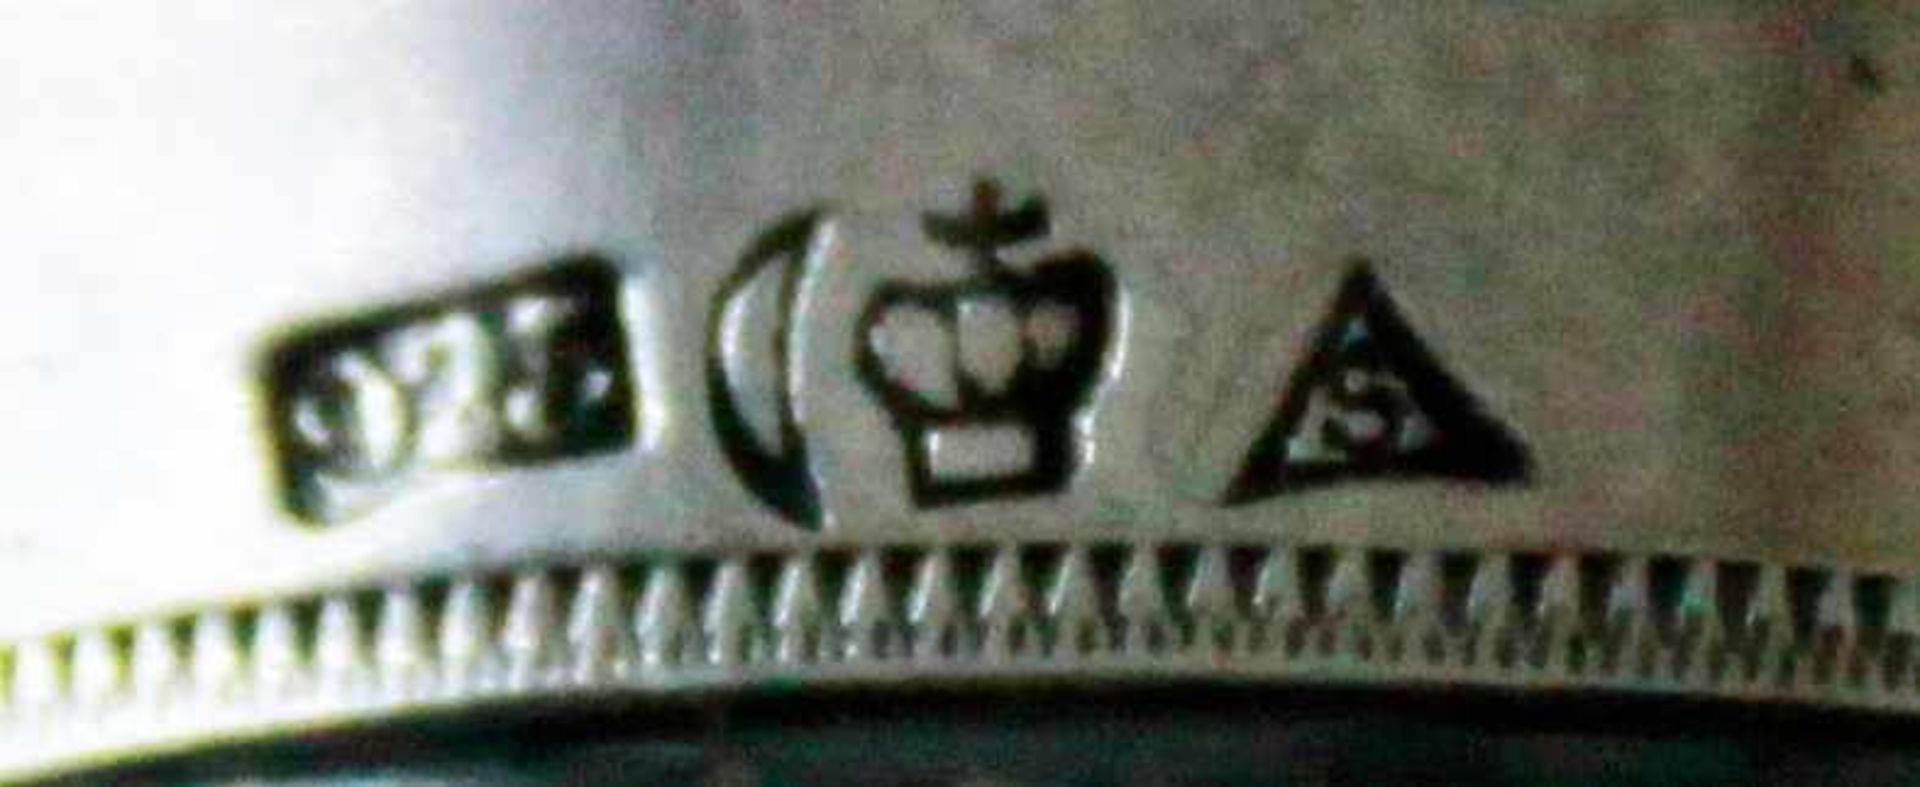 Schnapsbecher in Fingerhutform, 925 Silber, "Nur ein Fingerhut voll", deutsch, 20. Jhd., - Bild 2 aus 2